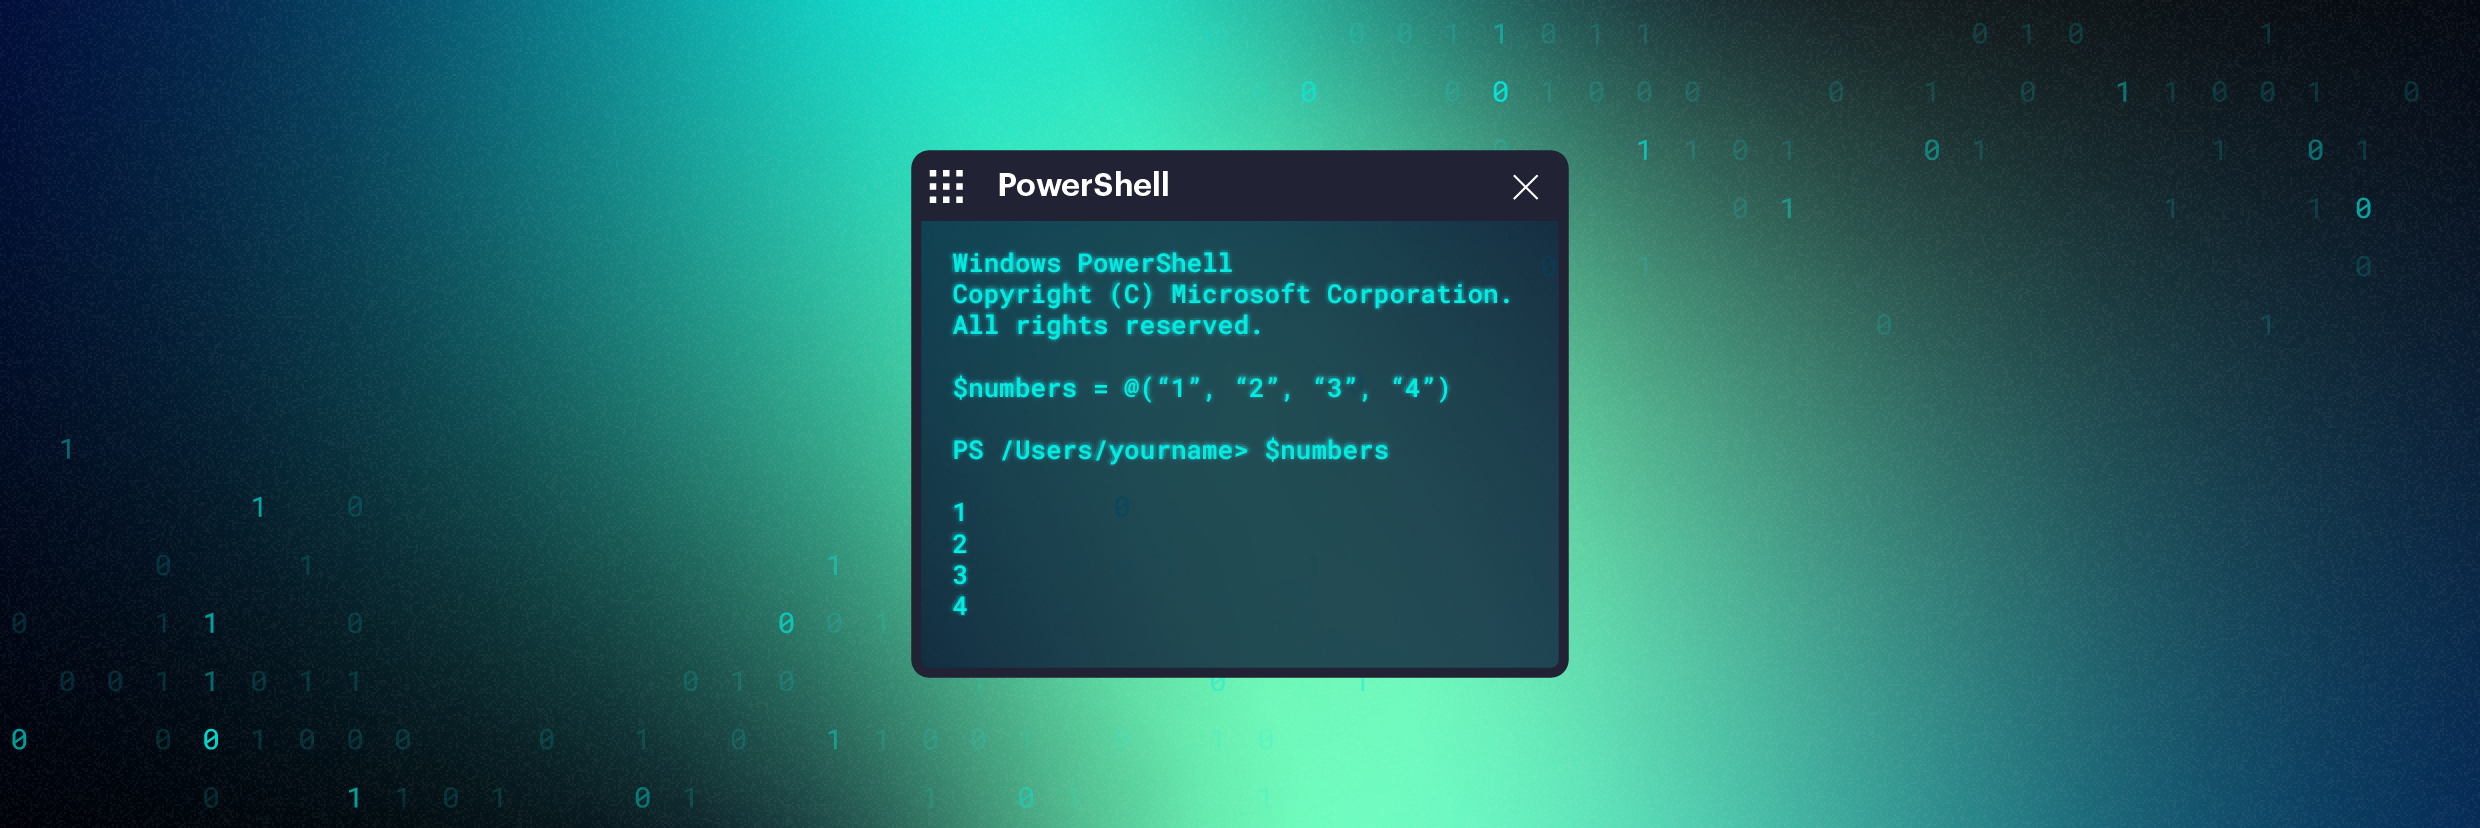 Guia de arrays do PowerShell: Como usar e criar